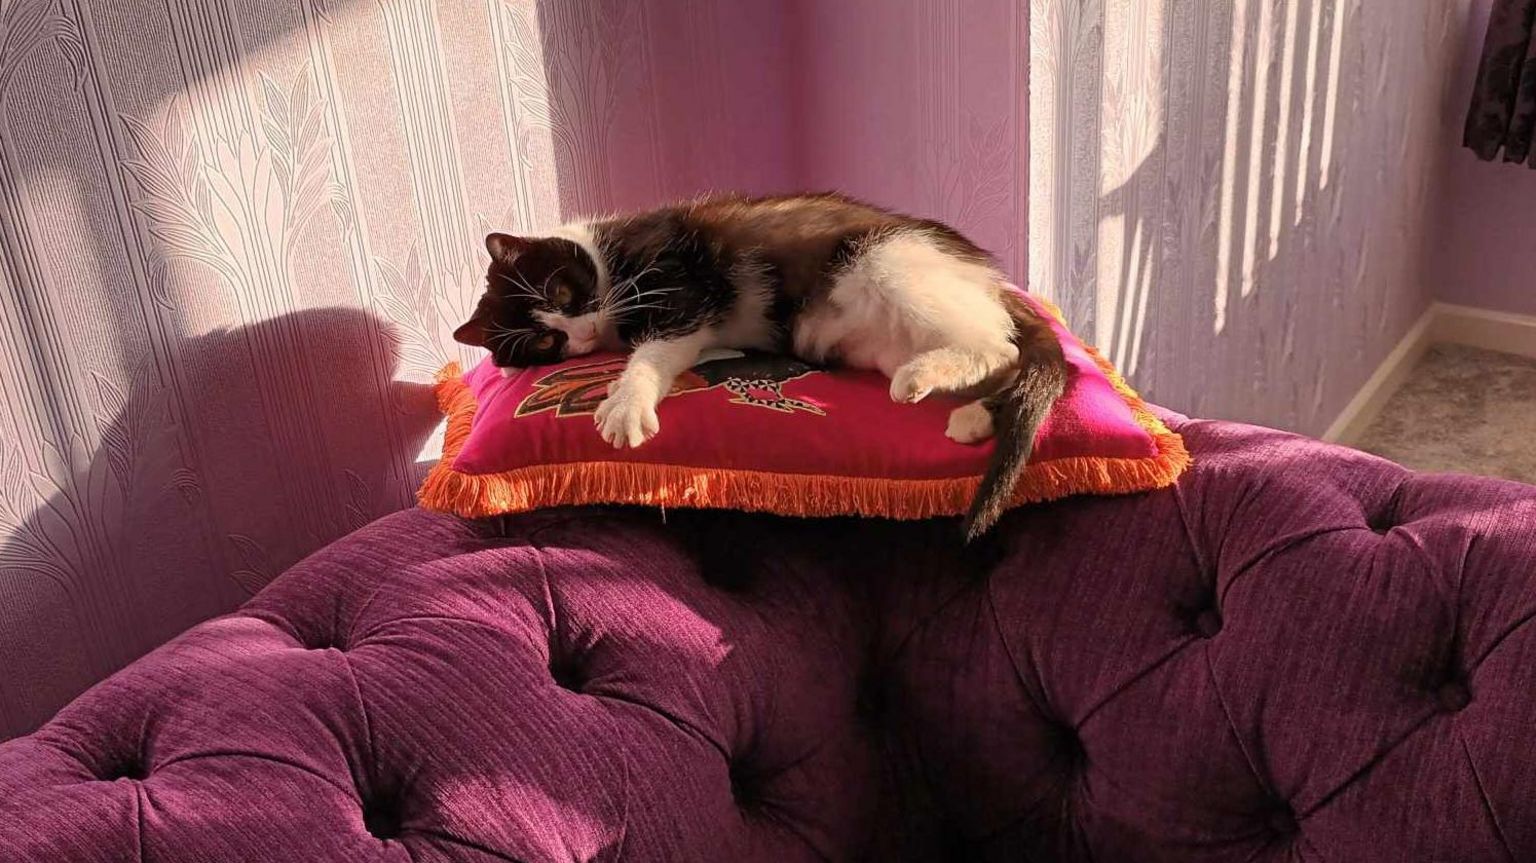 Sarina the cat lying on a cushion balanced on the edge of a sofa